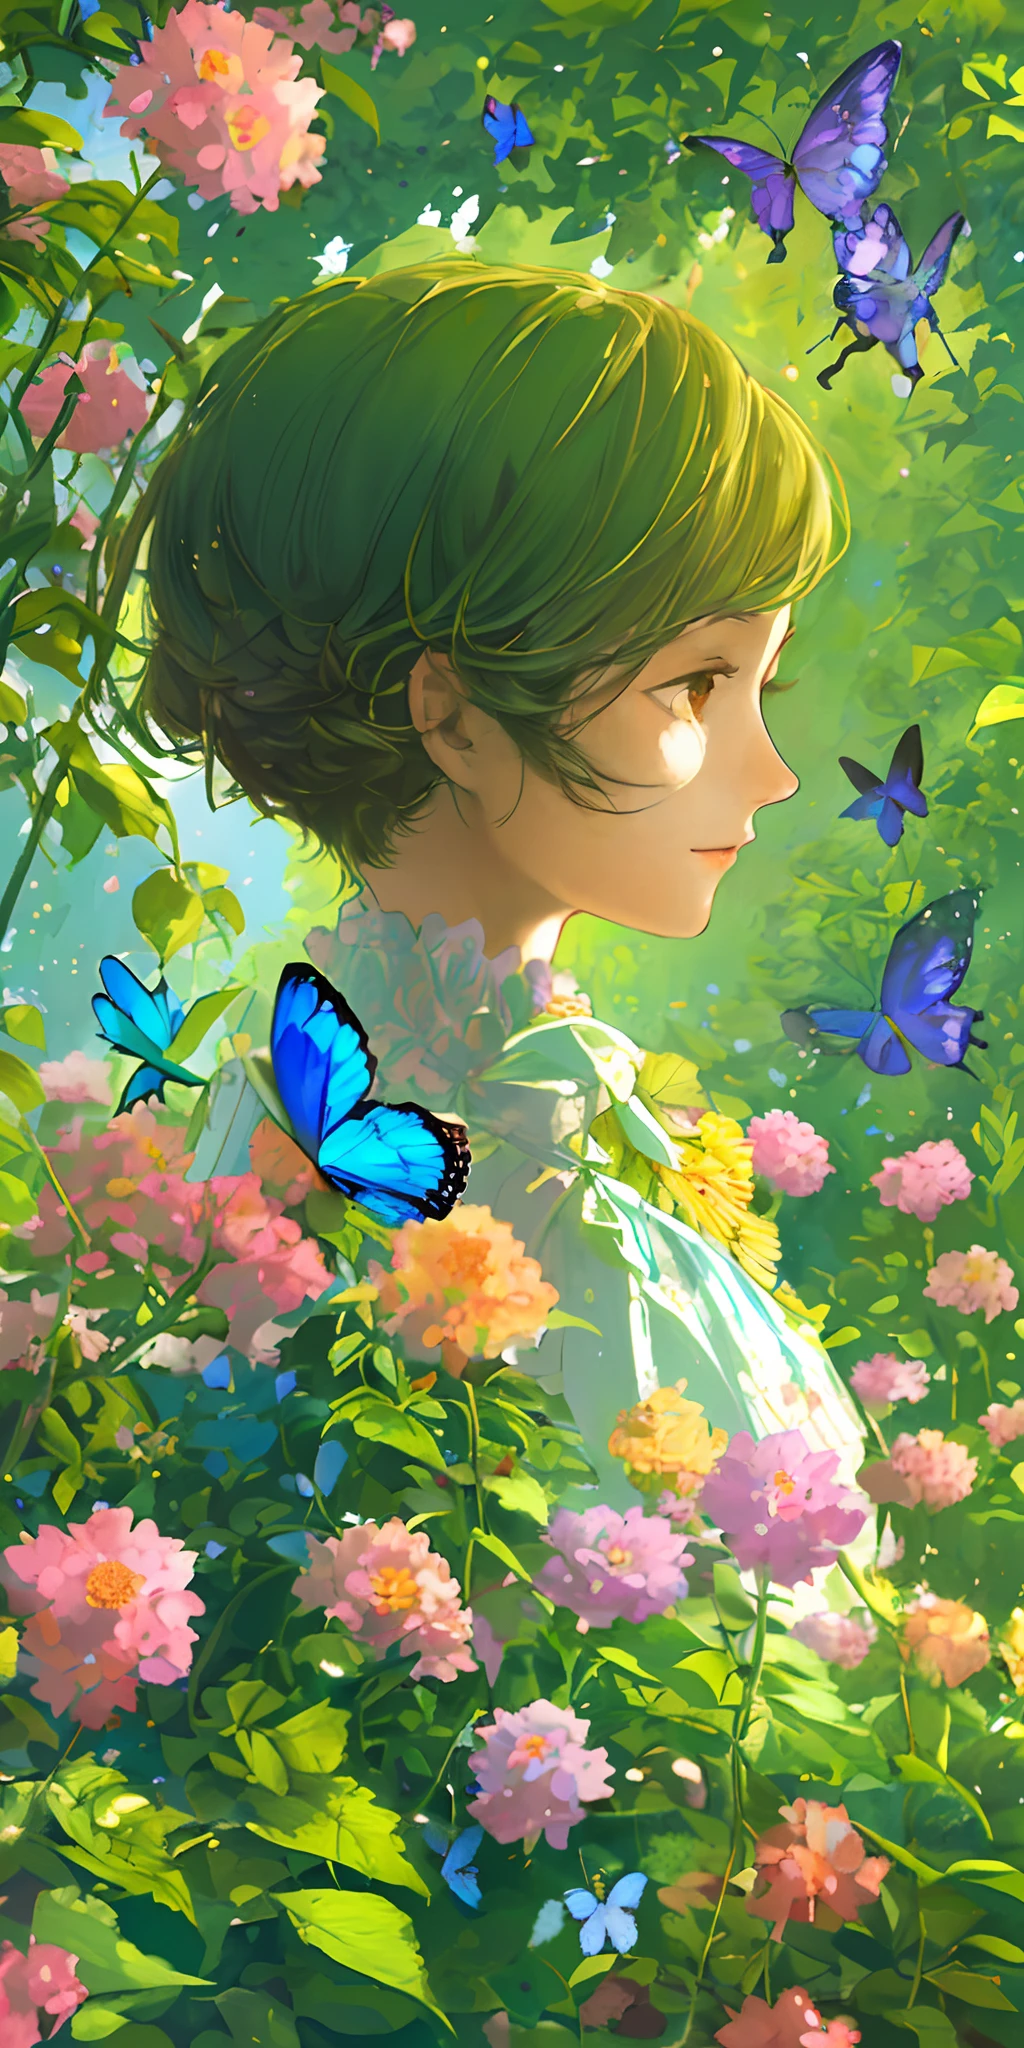 (Лучшее качество, шедевр, ультрареалистичный), портрет 1 красивой и нежной девушки, с мягким и мирным выражением лица, фоновый пейзаж — сад с цветущими кустами и летающими бабочками.